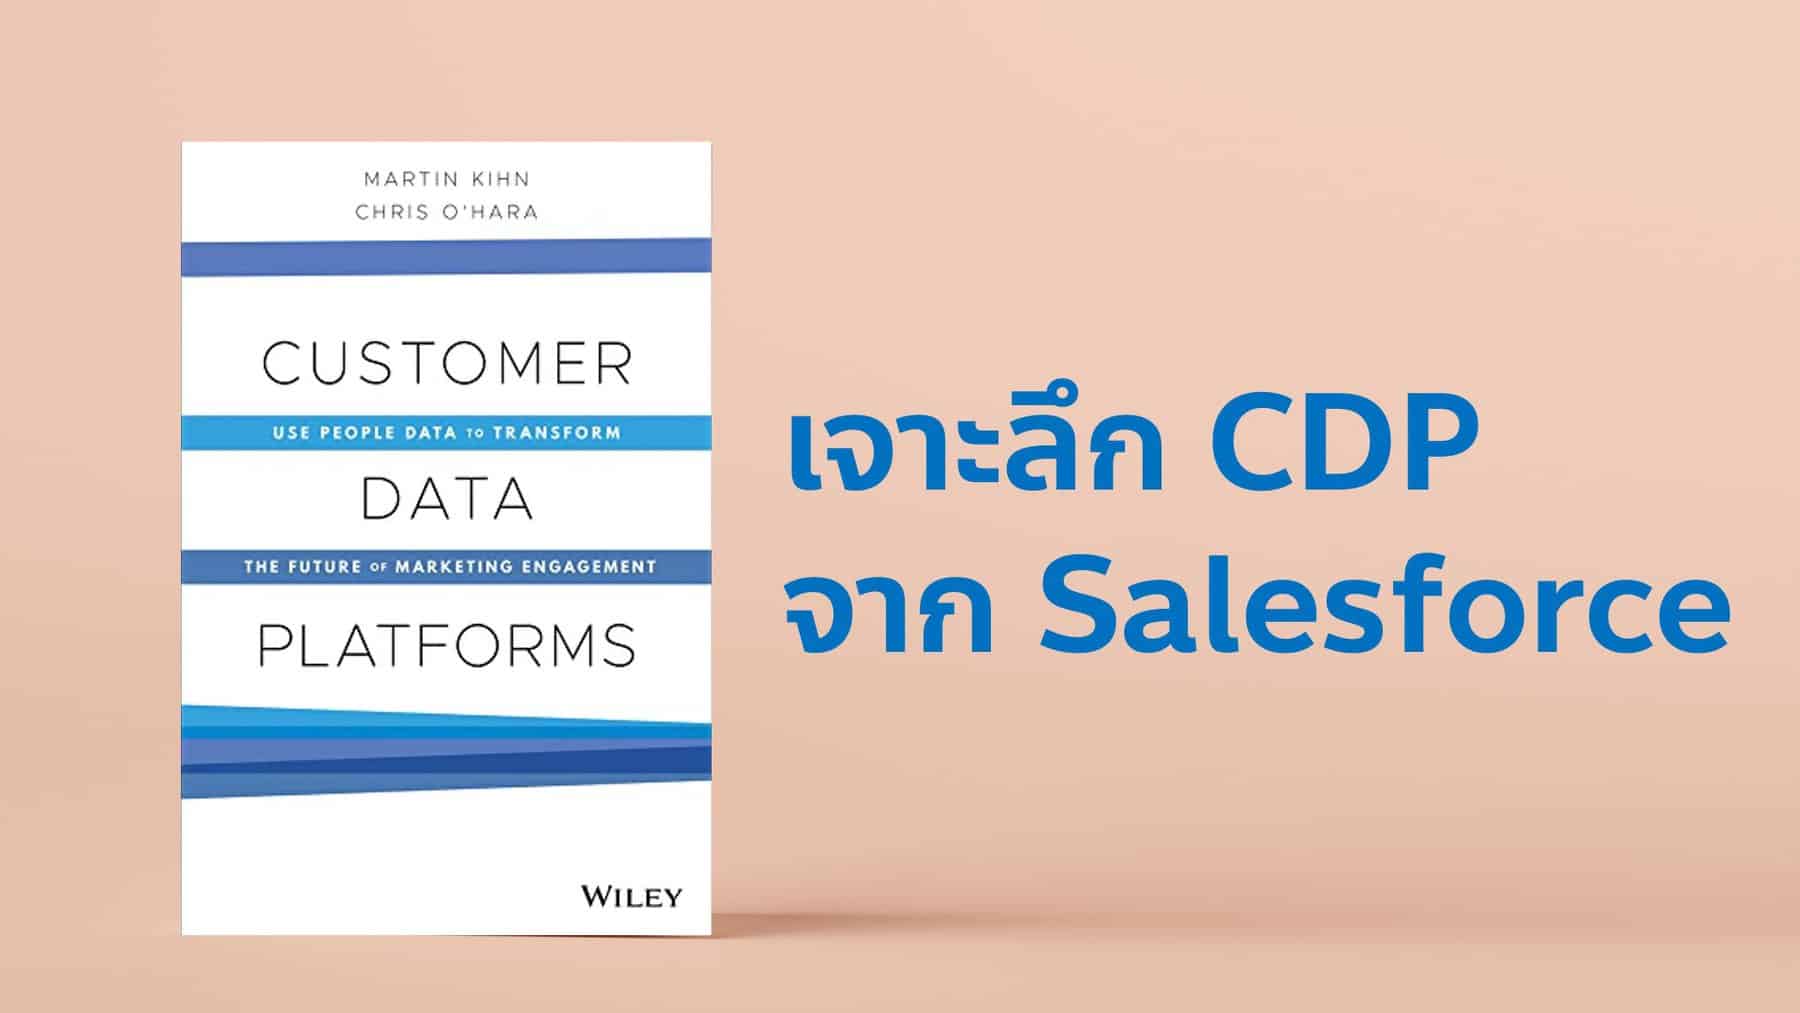 สรุปหนังสือ Customer Data Platform หรือ CDP ของ Salesforce พาธุรกิจไปอีกระดับด้วย Data พร้อม Use Case Study การใช้ Data-Driven มากมาย